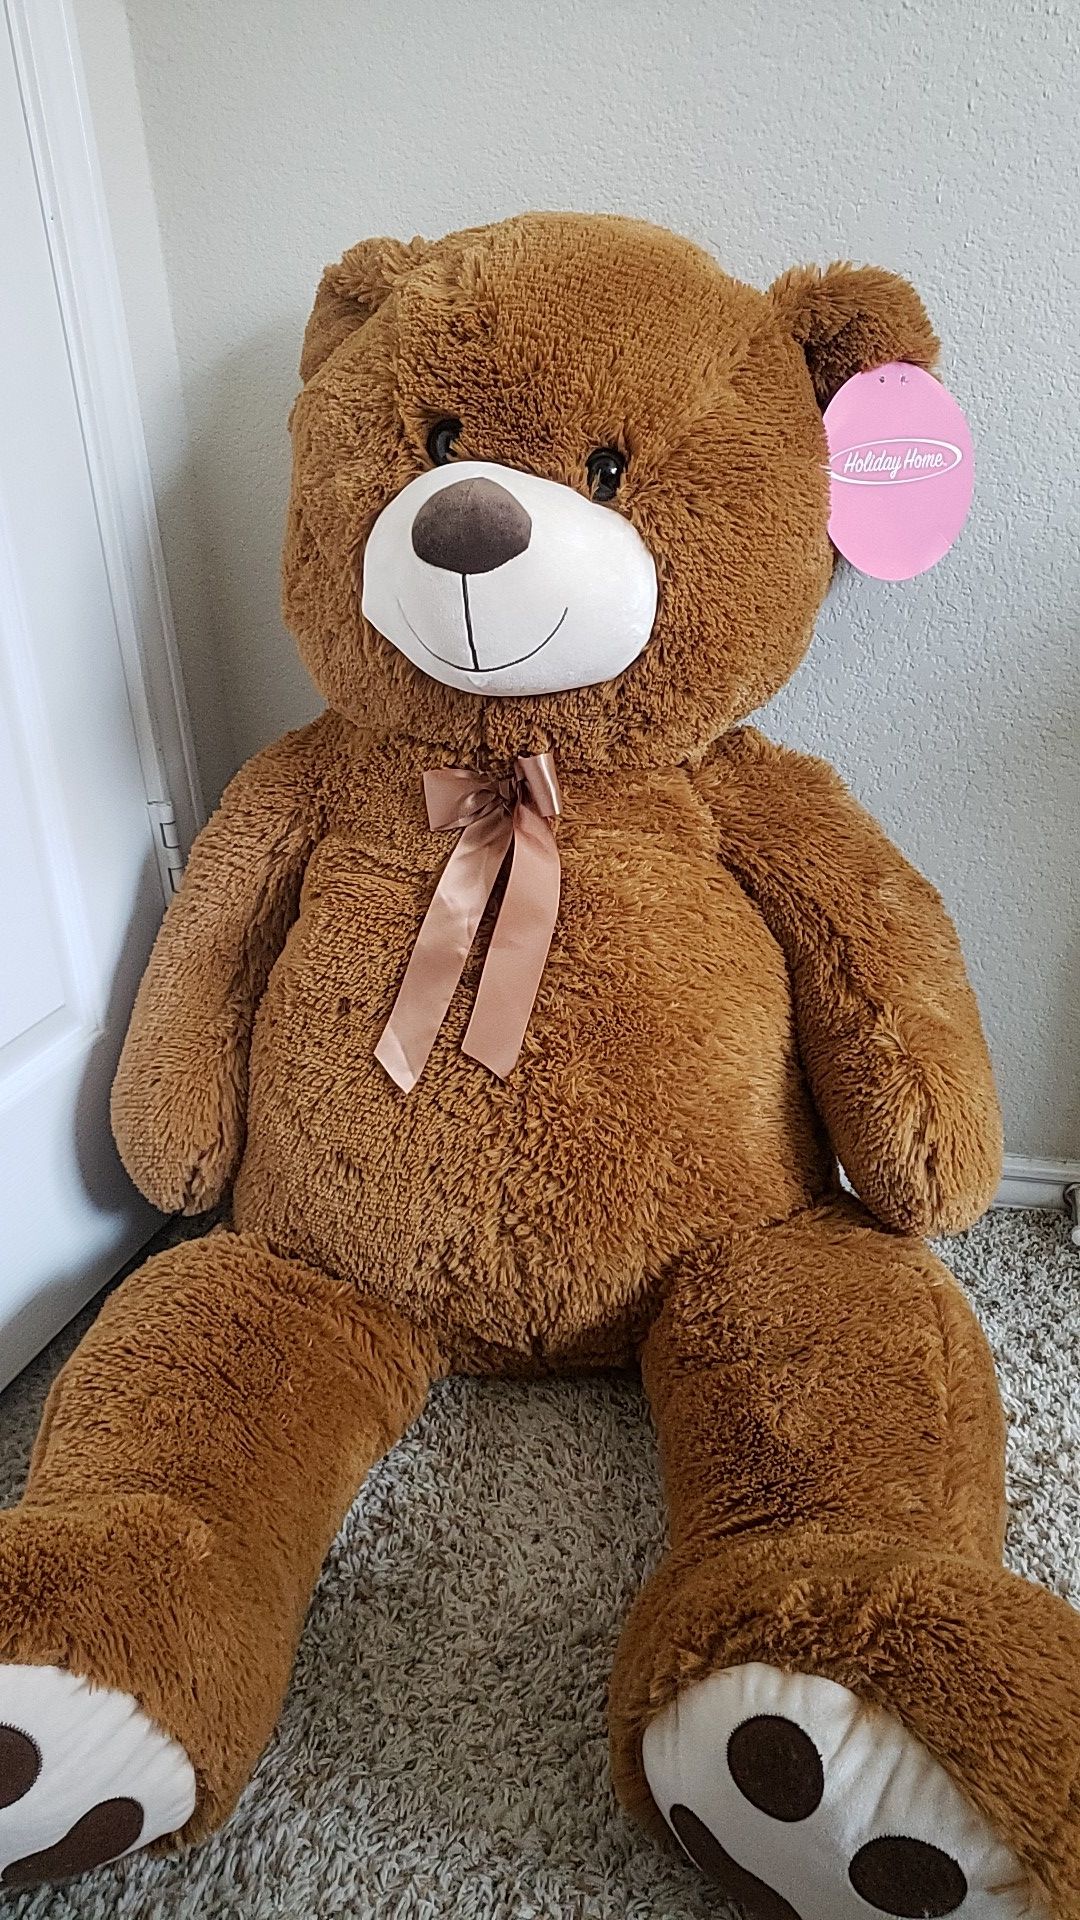 4ft tall teddy bear